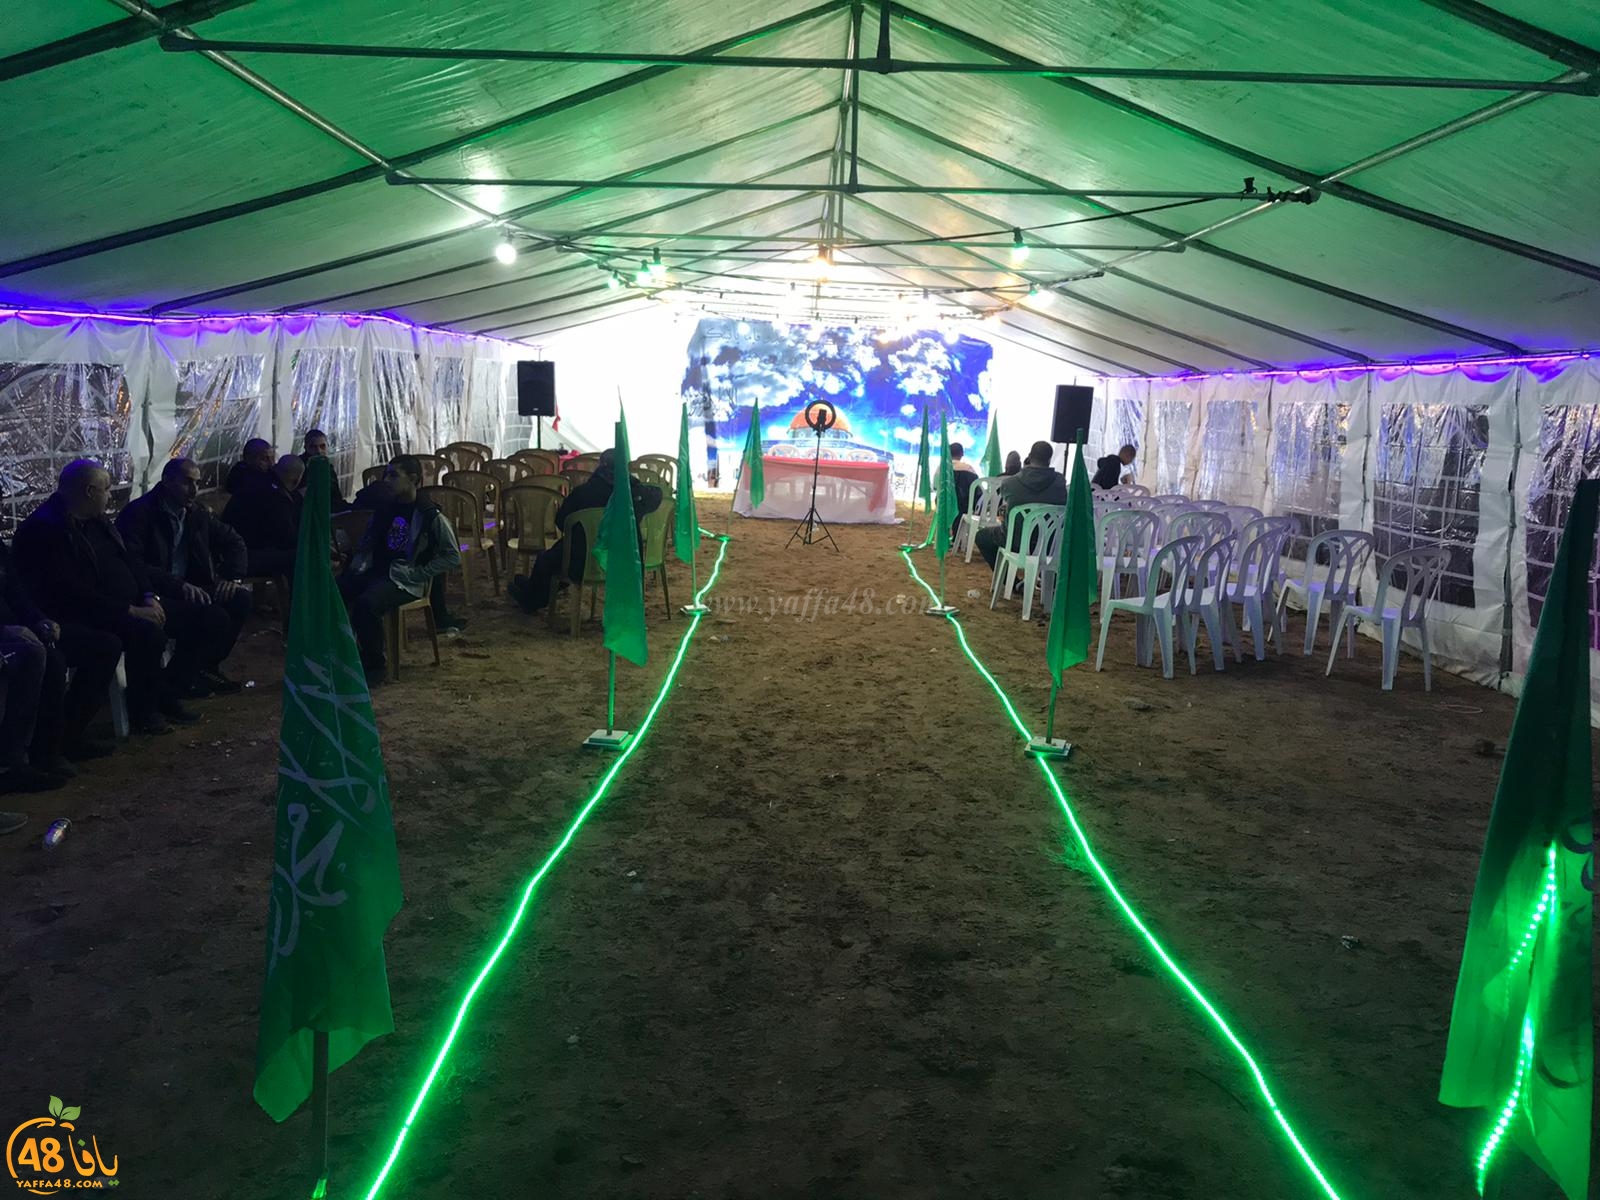  بالصور: خيمة الهدى تنظم أمسية دعوية في ضيافة عائلة كراجة بيافا